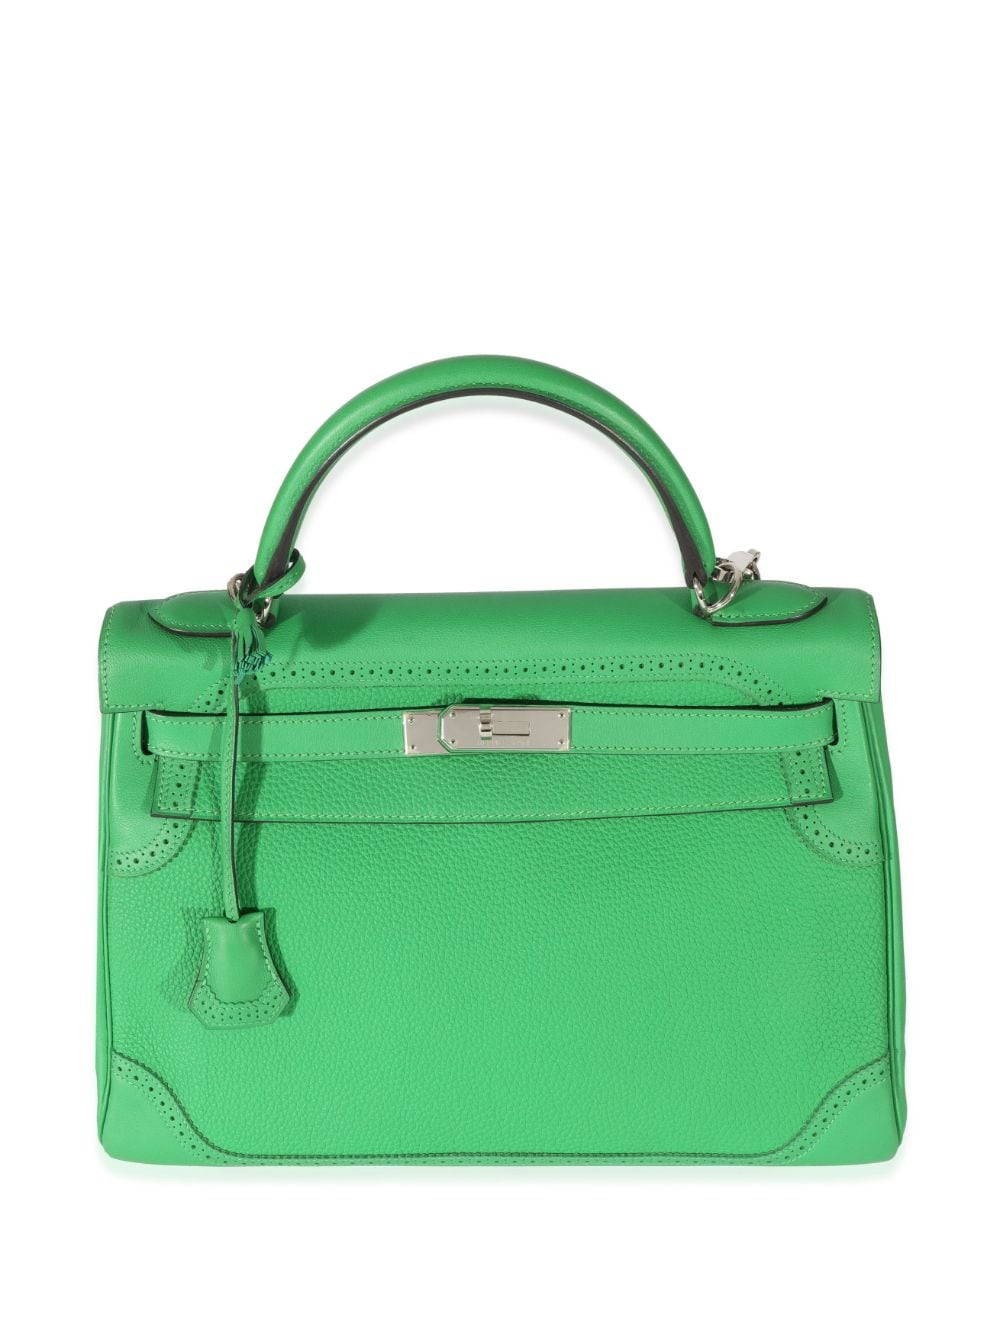 Hermès Pre-Owned Kelly 32 handbag - Green von Hermès Pre-Owned